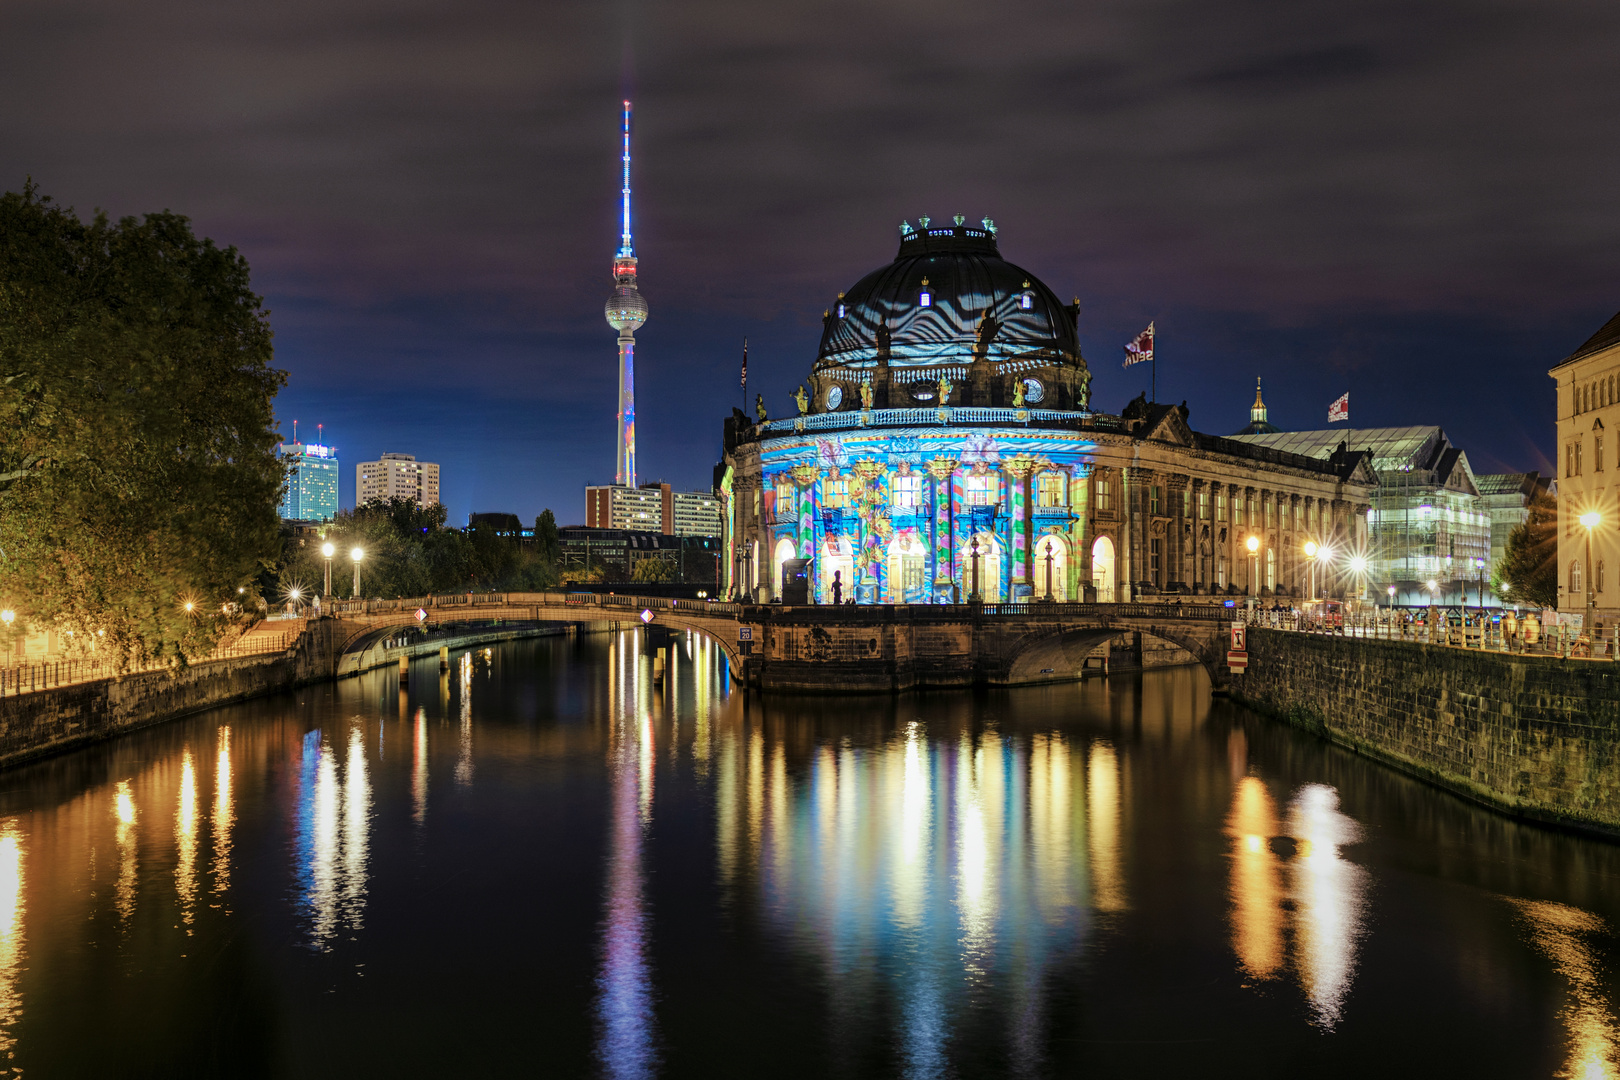 Berlin Festival of Lights 2019